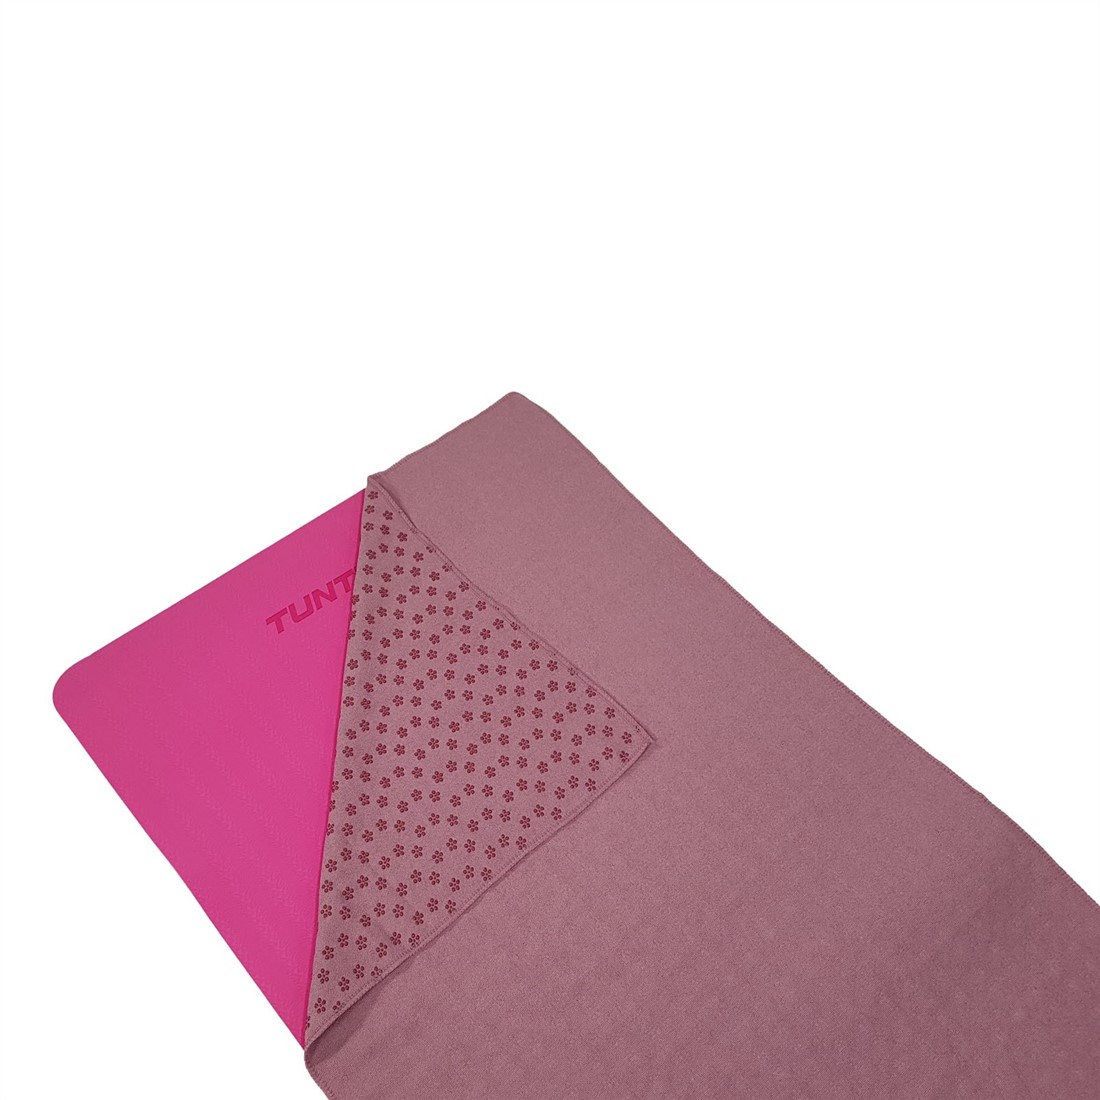 Vertellen Academie Verbeteren Tunturi Siliconen Yoga Handdoek - 183 x 67 cm - Roze | Fitwinkel.nl